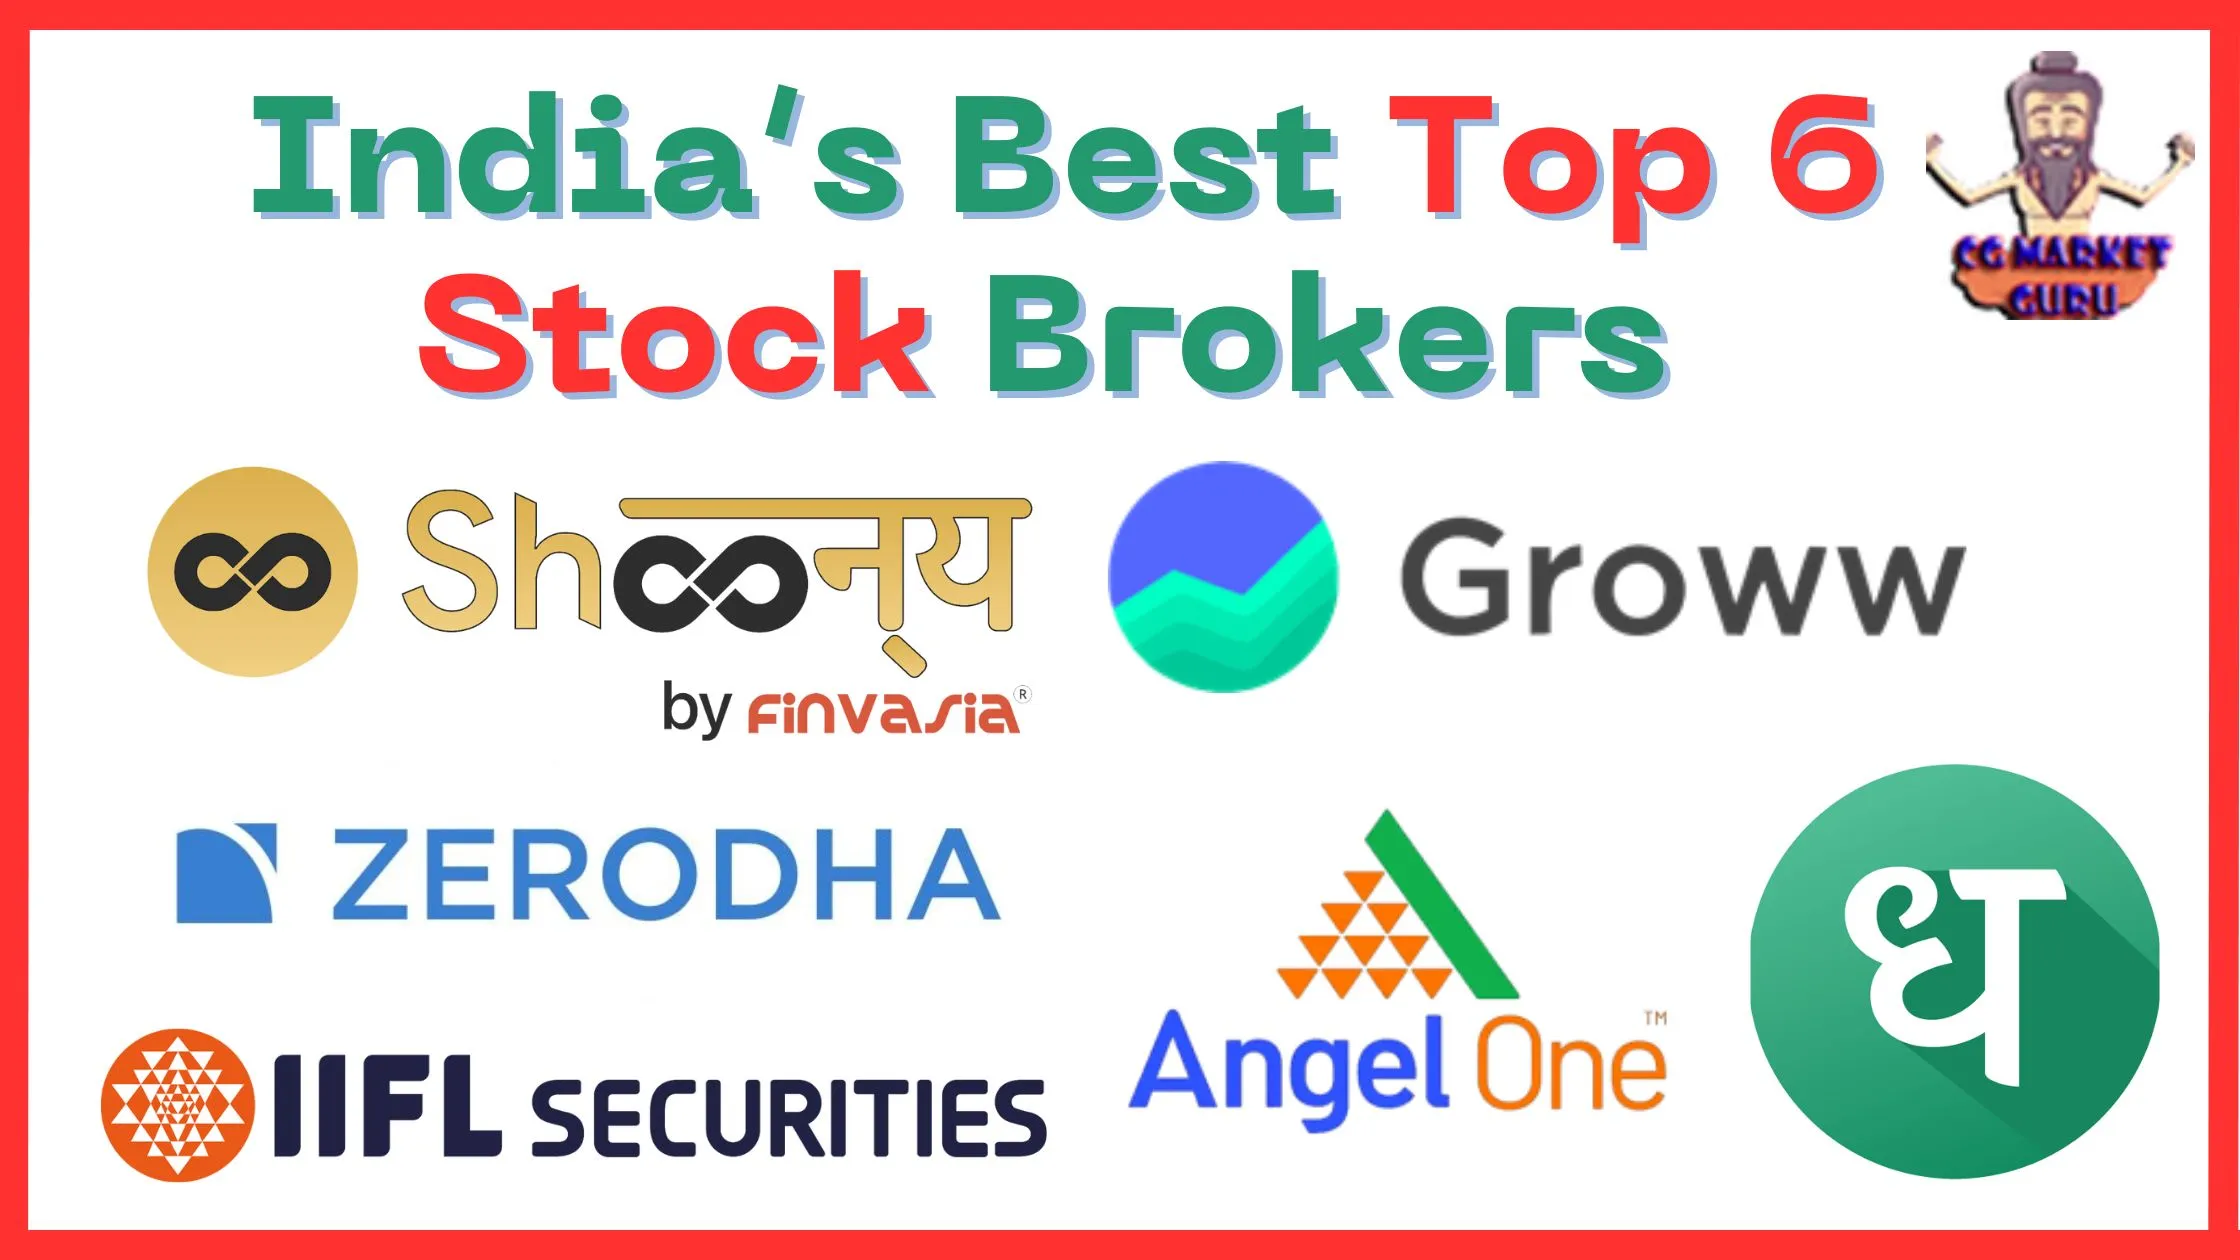 List of Top 6 Stock Brokers